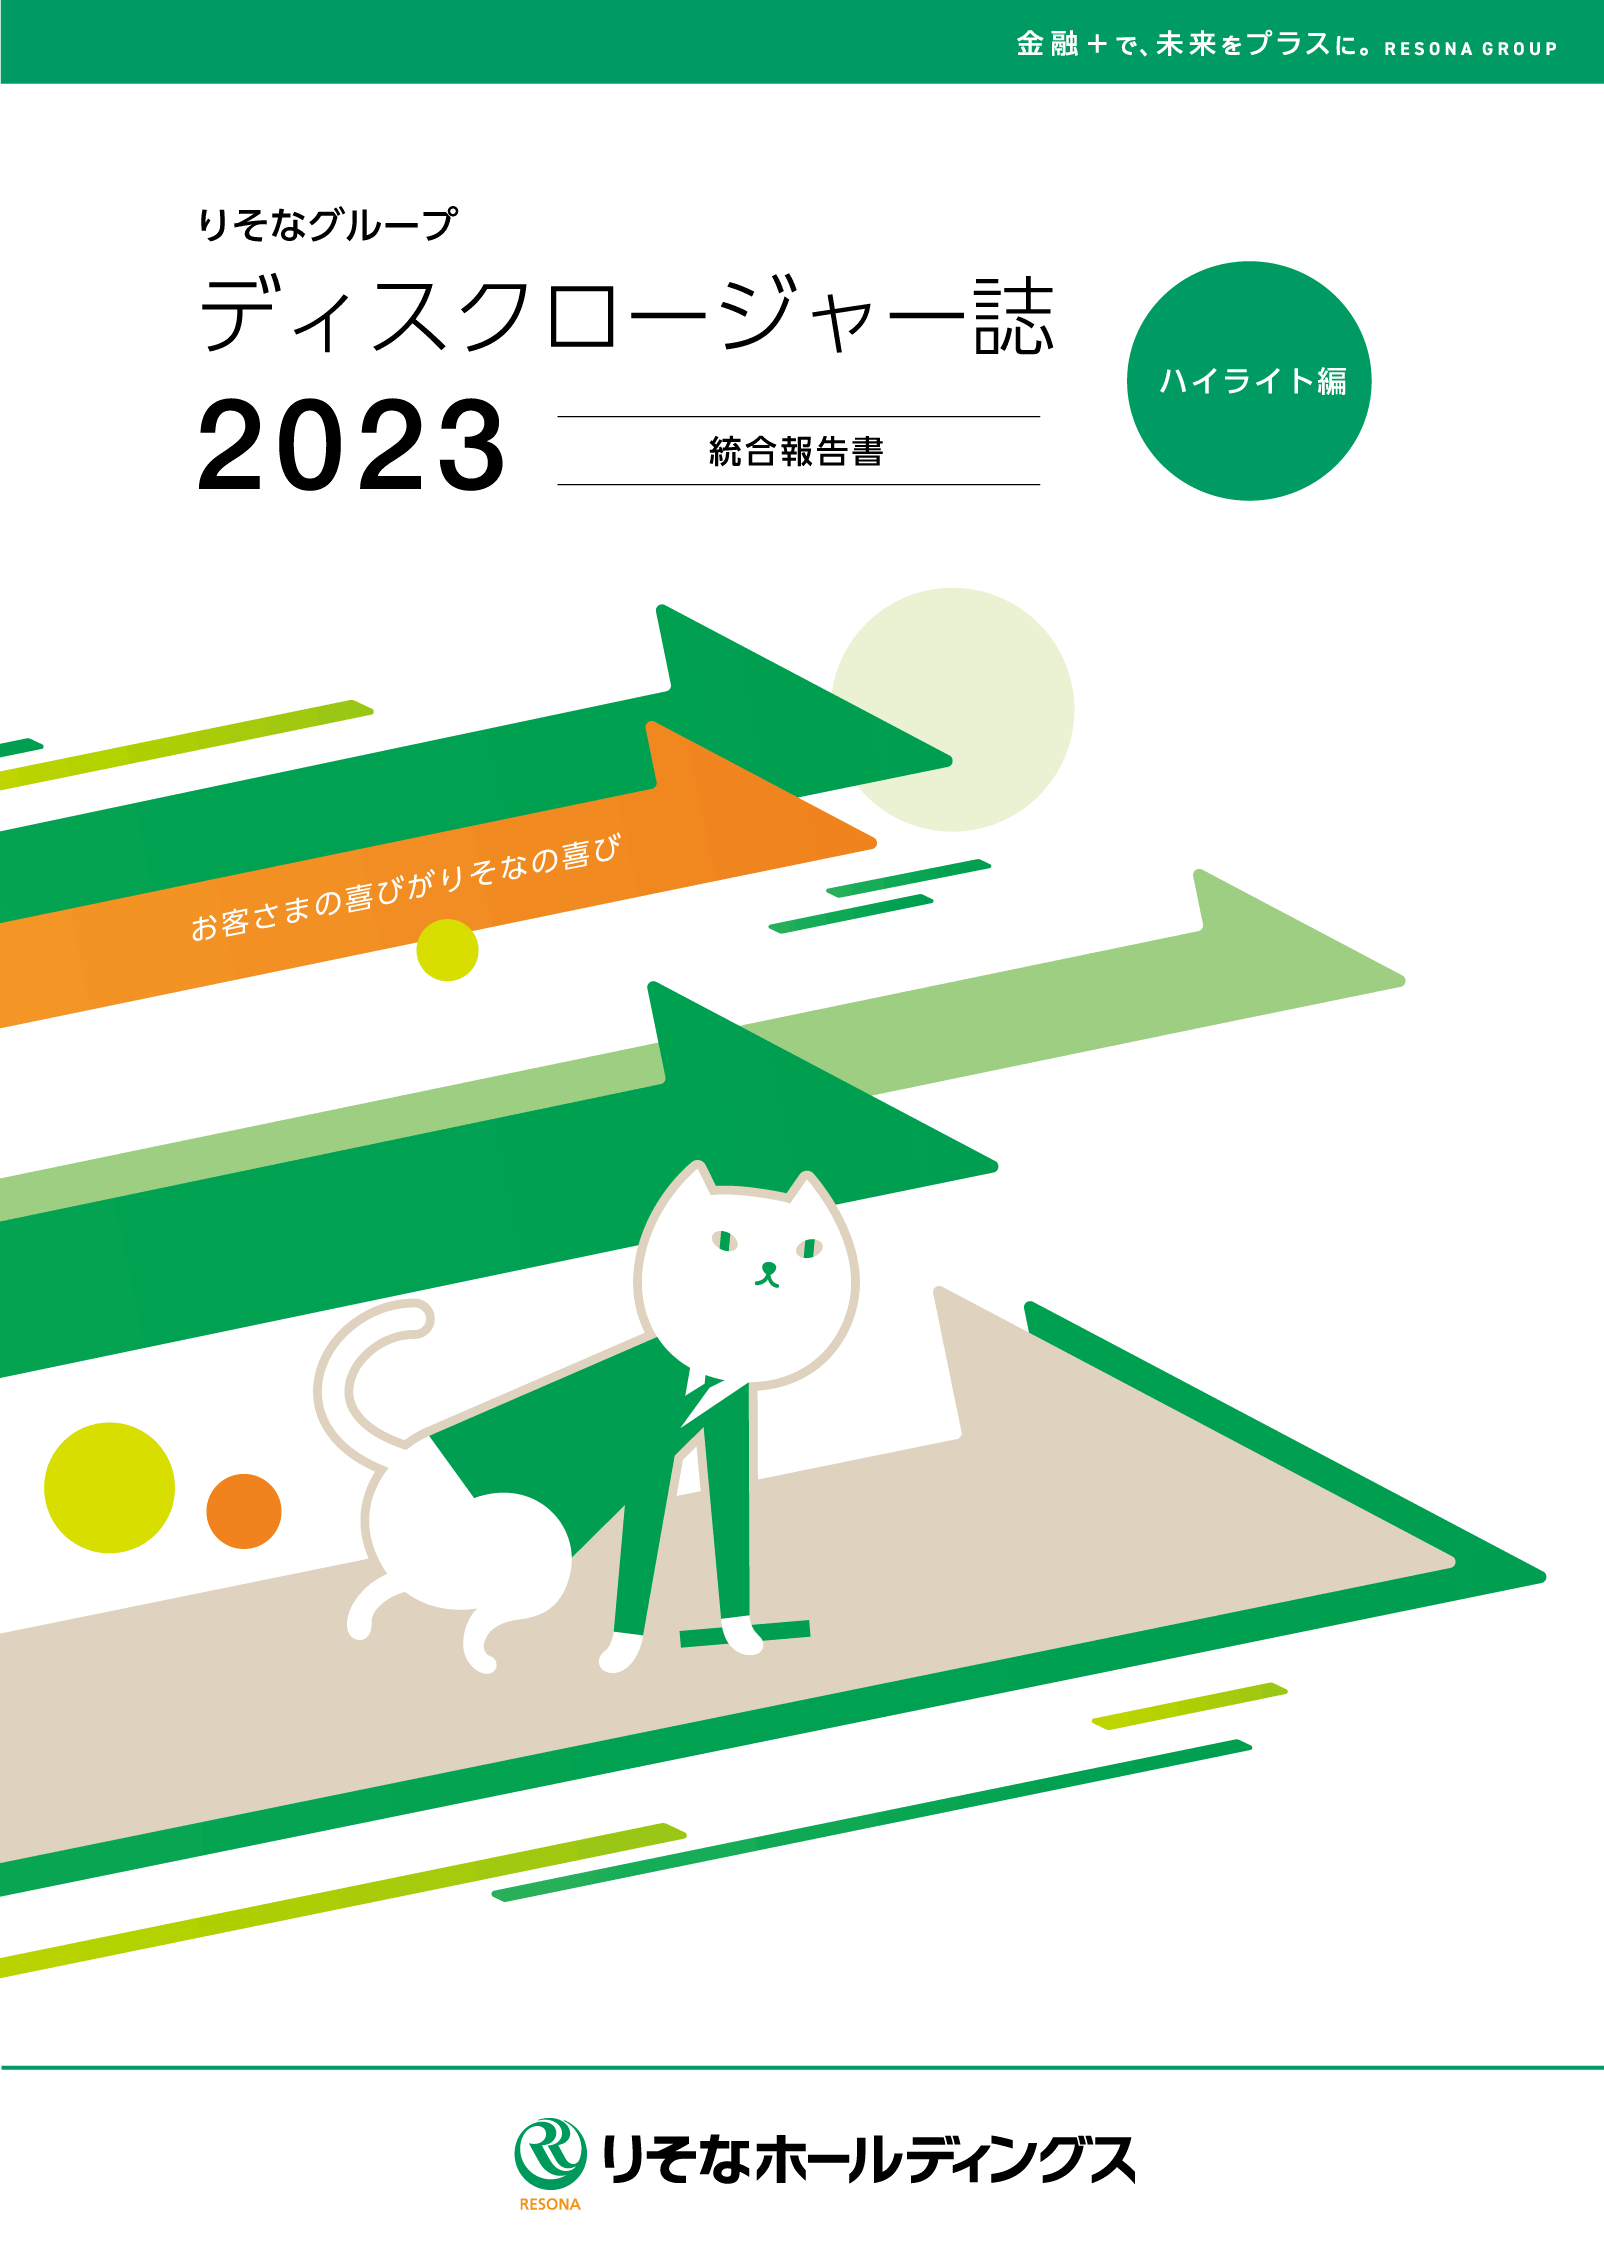 ディスクロージャー誌2023 ハイライト編